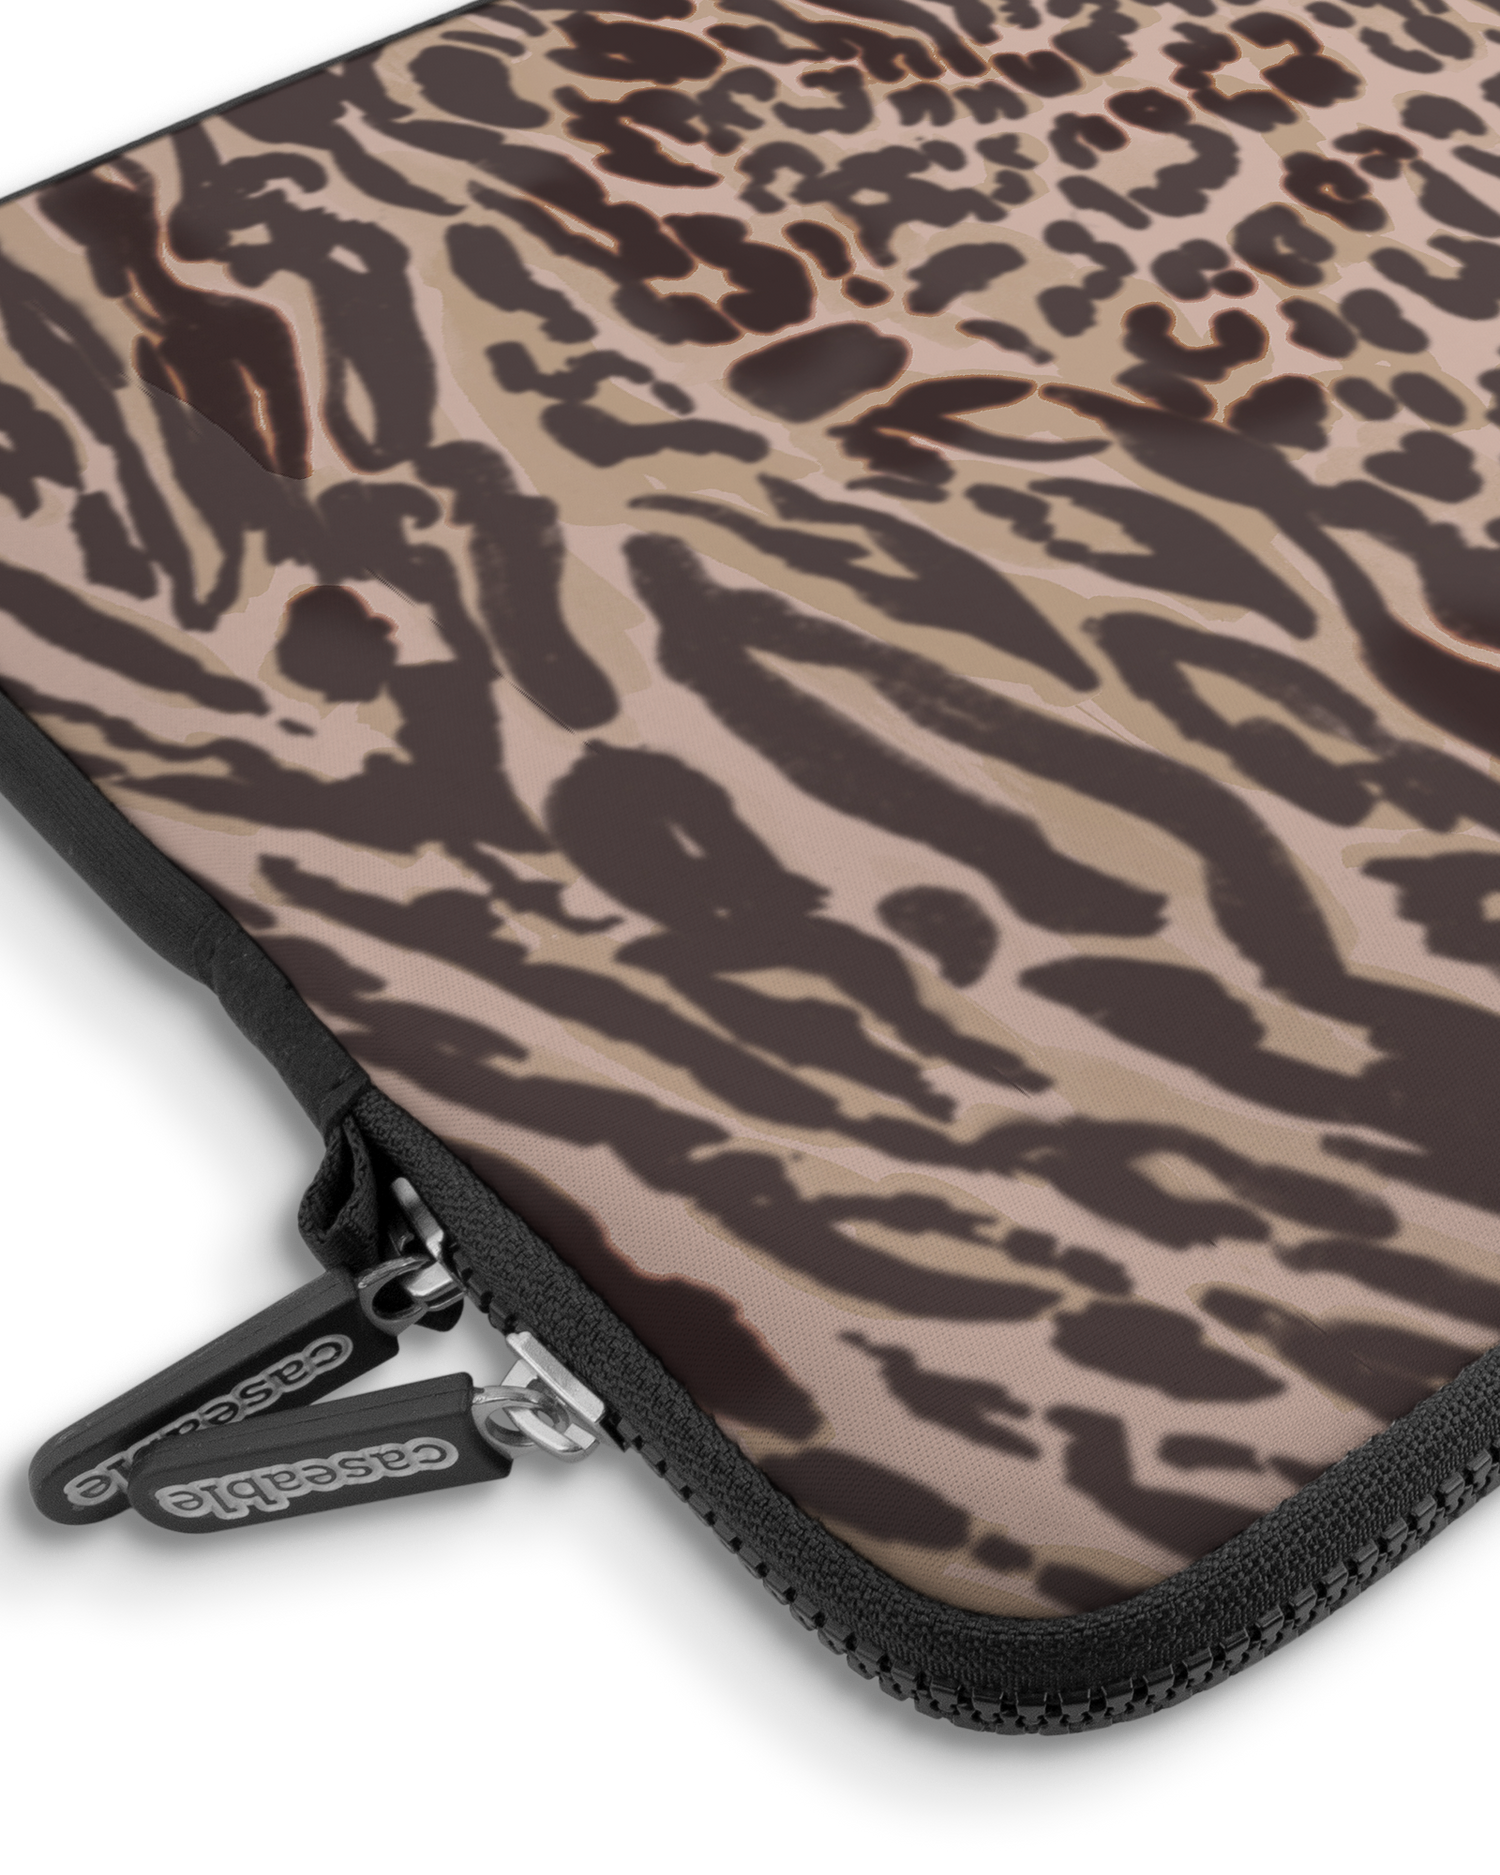 Animal Skin Tough Love Premium Laptoptasche 15 Zoll mit Gerät im Inneren